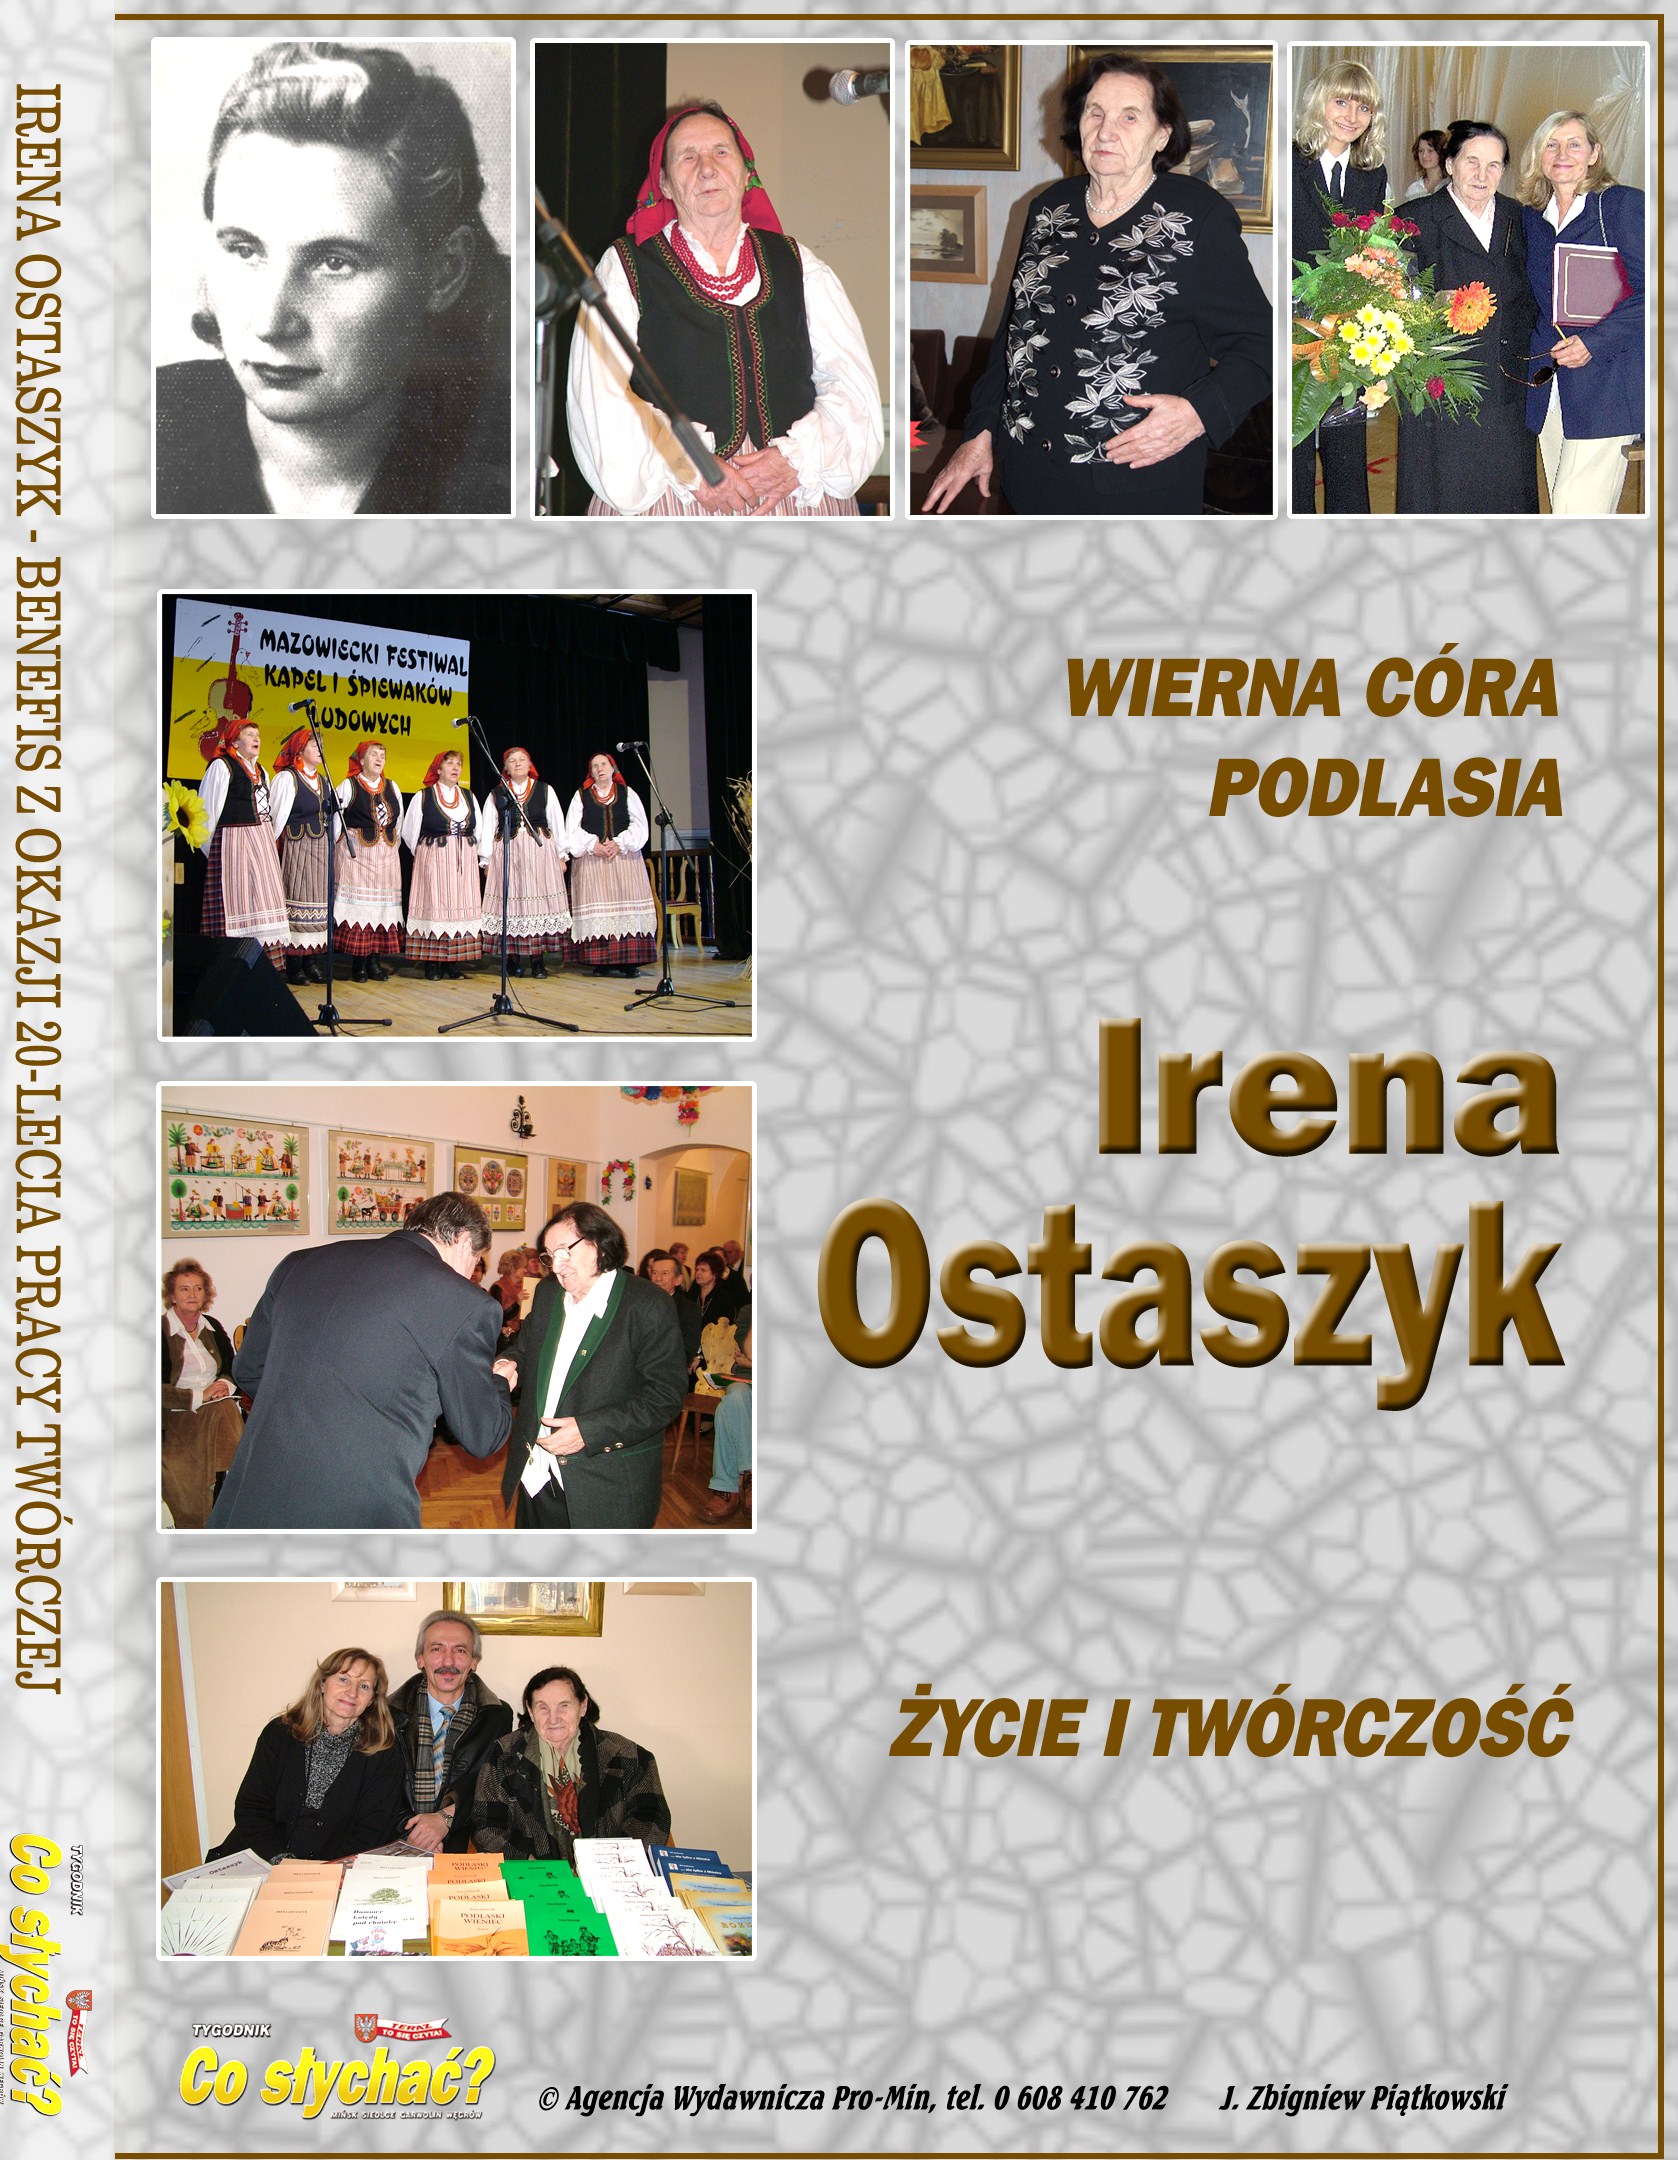 Irena Ostaszyk WIERNA CRA PODLASIA